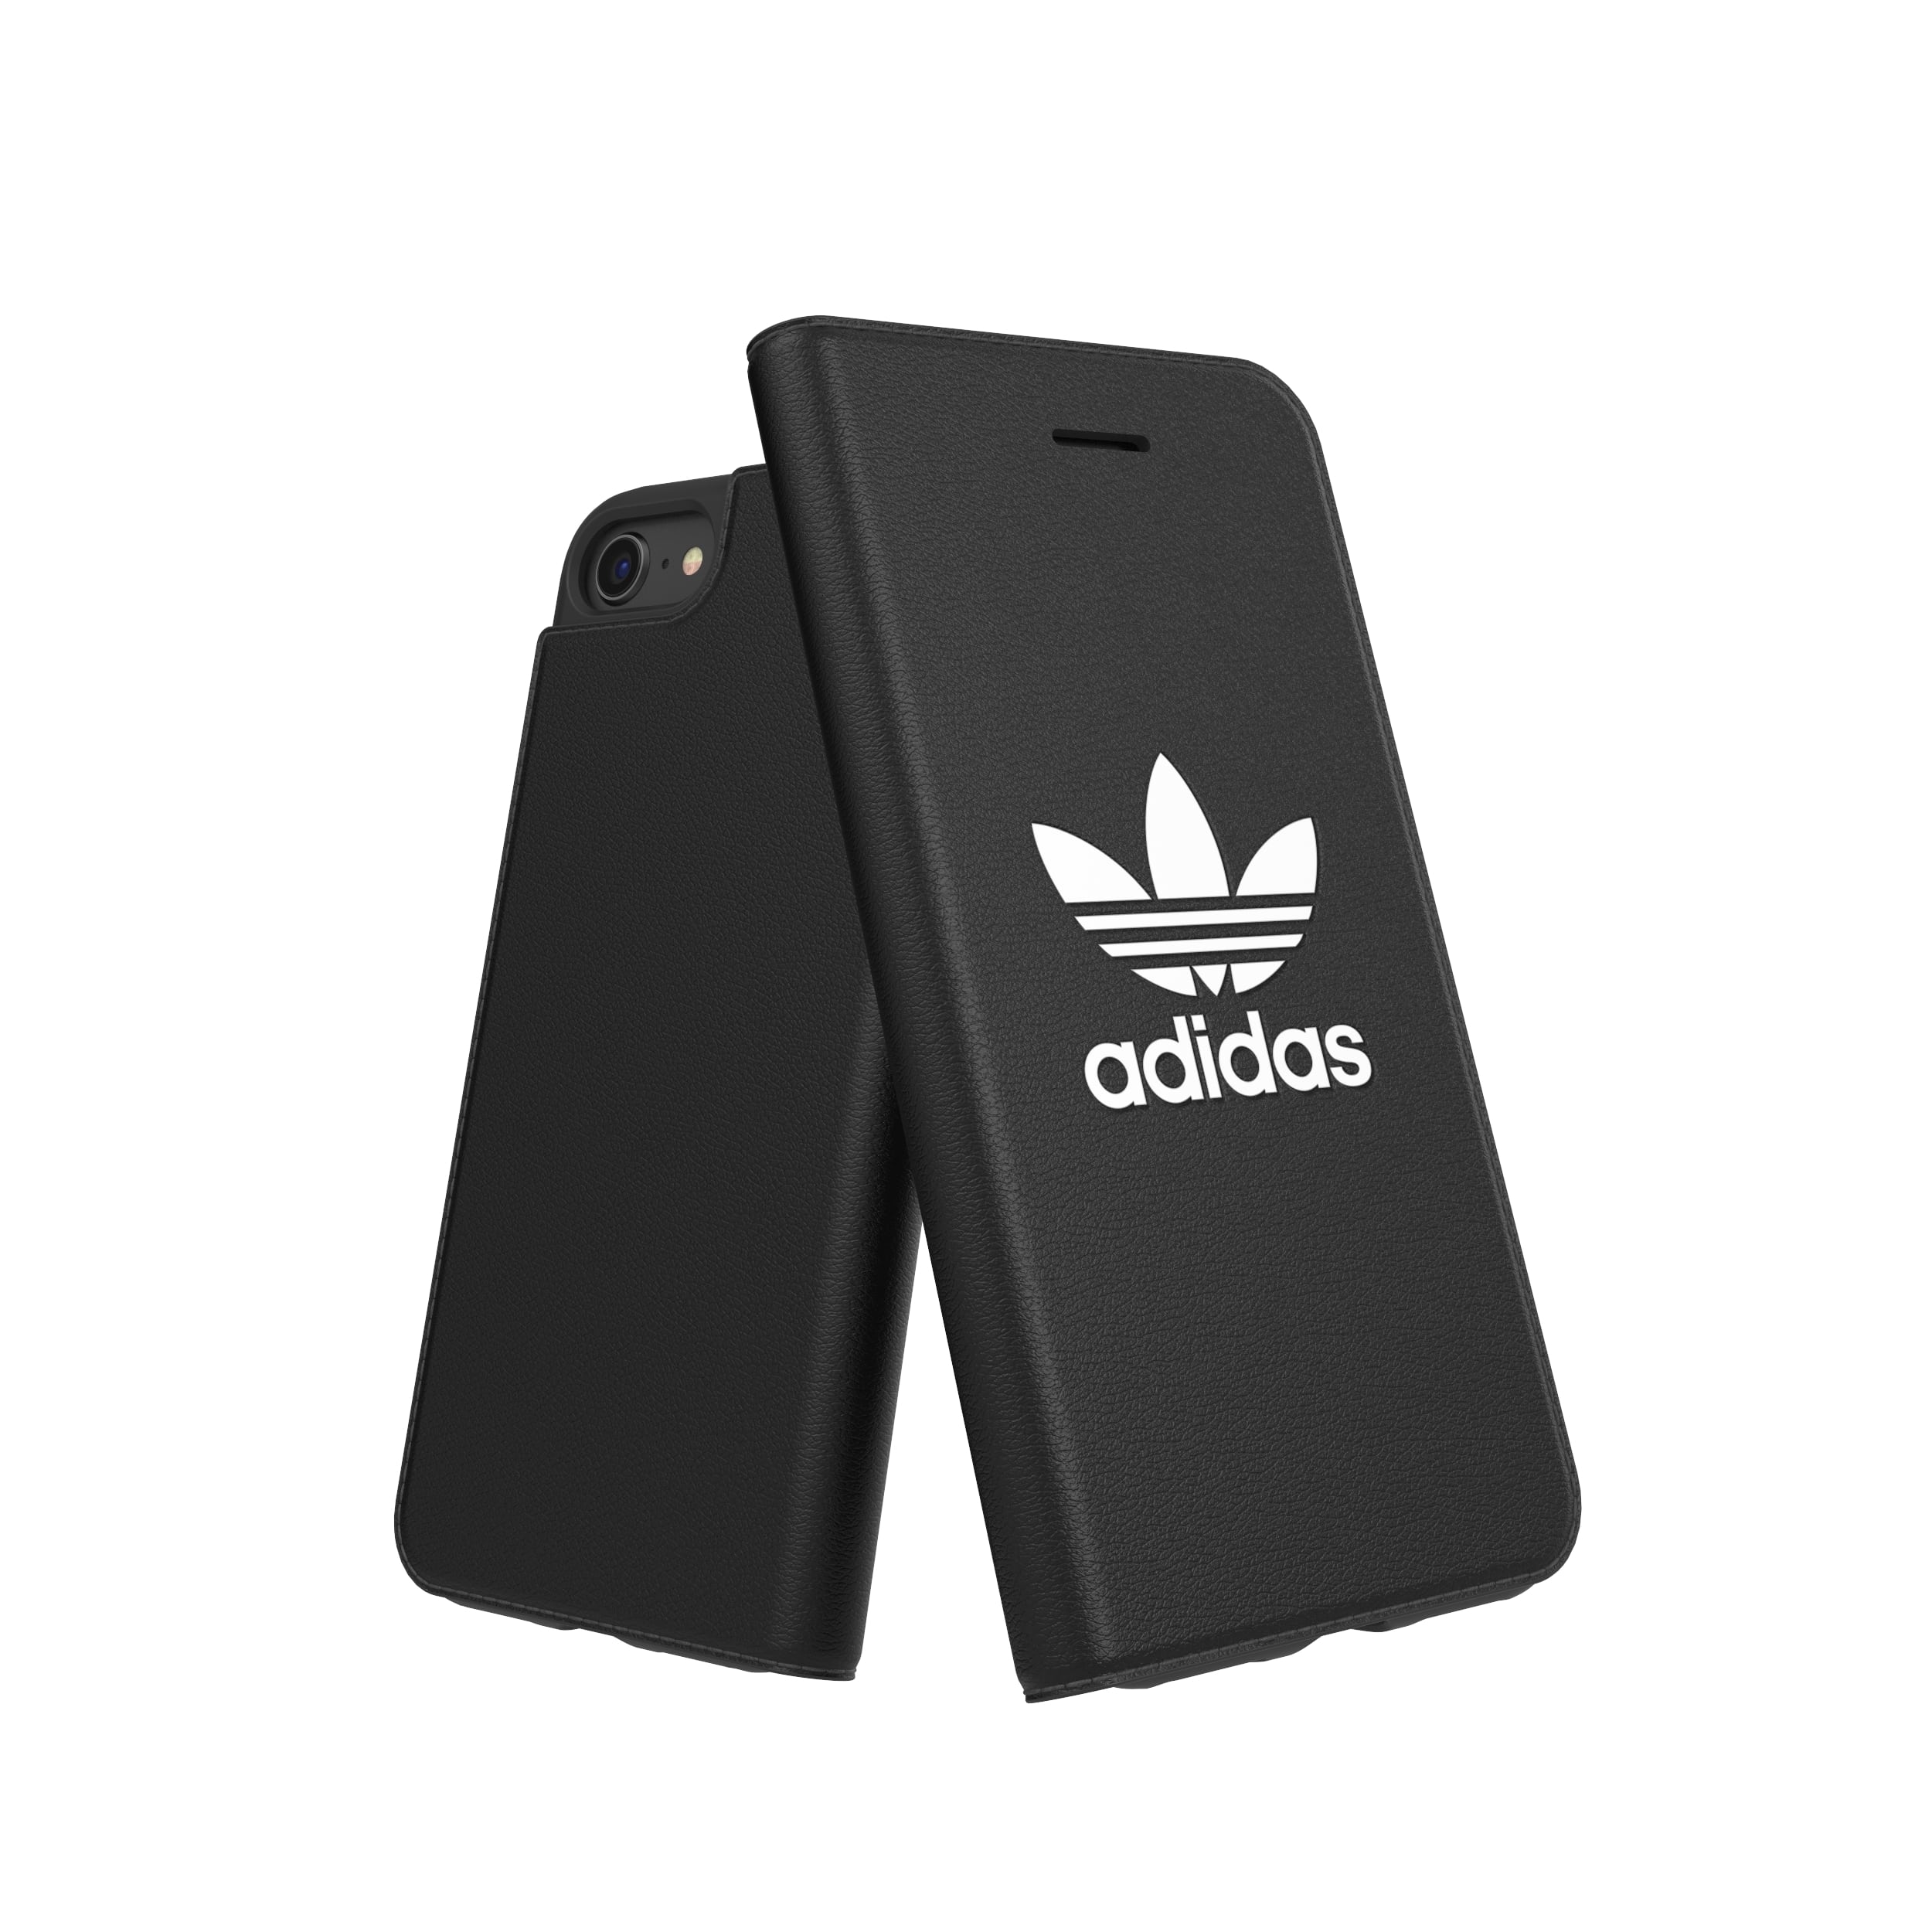 楽天市場 Adidas Iphone 7 8 Or Booklet Case Black White スマホケース スマホ ケース アディダス アイフォン Gadget Market 楽天市場店